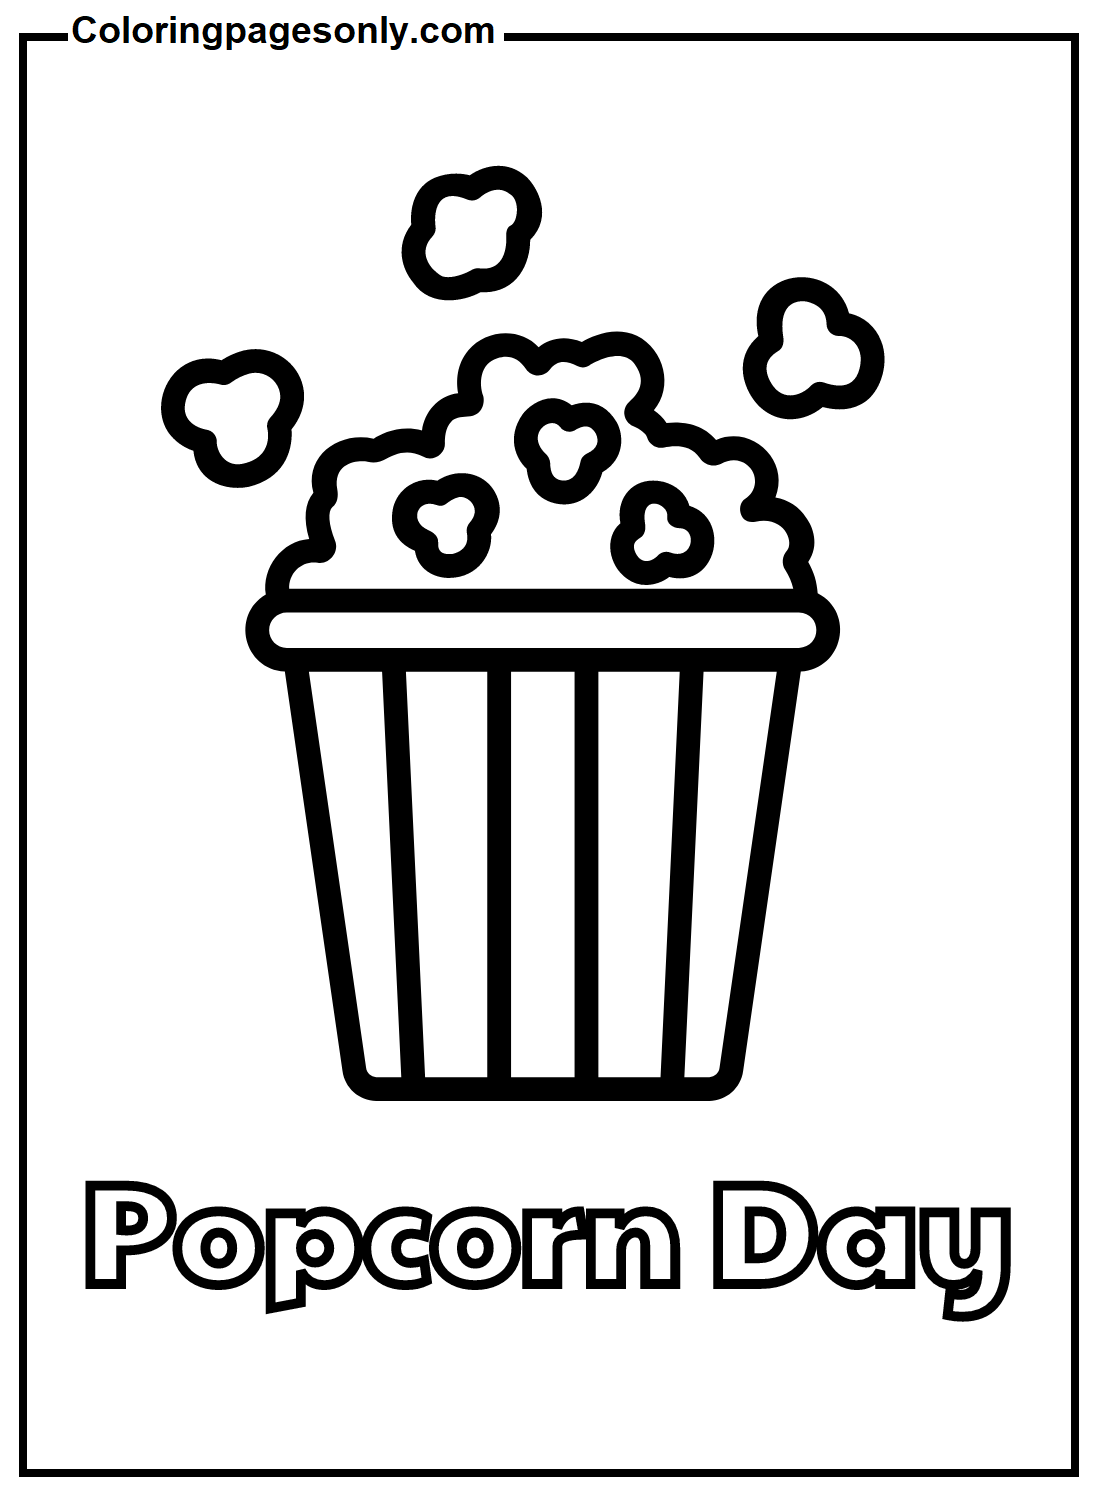 Día de las palomitas de maíz de Popcorn